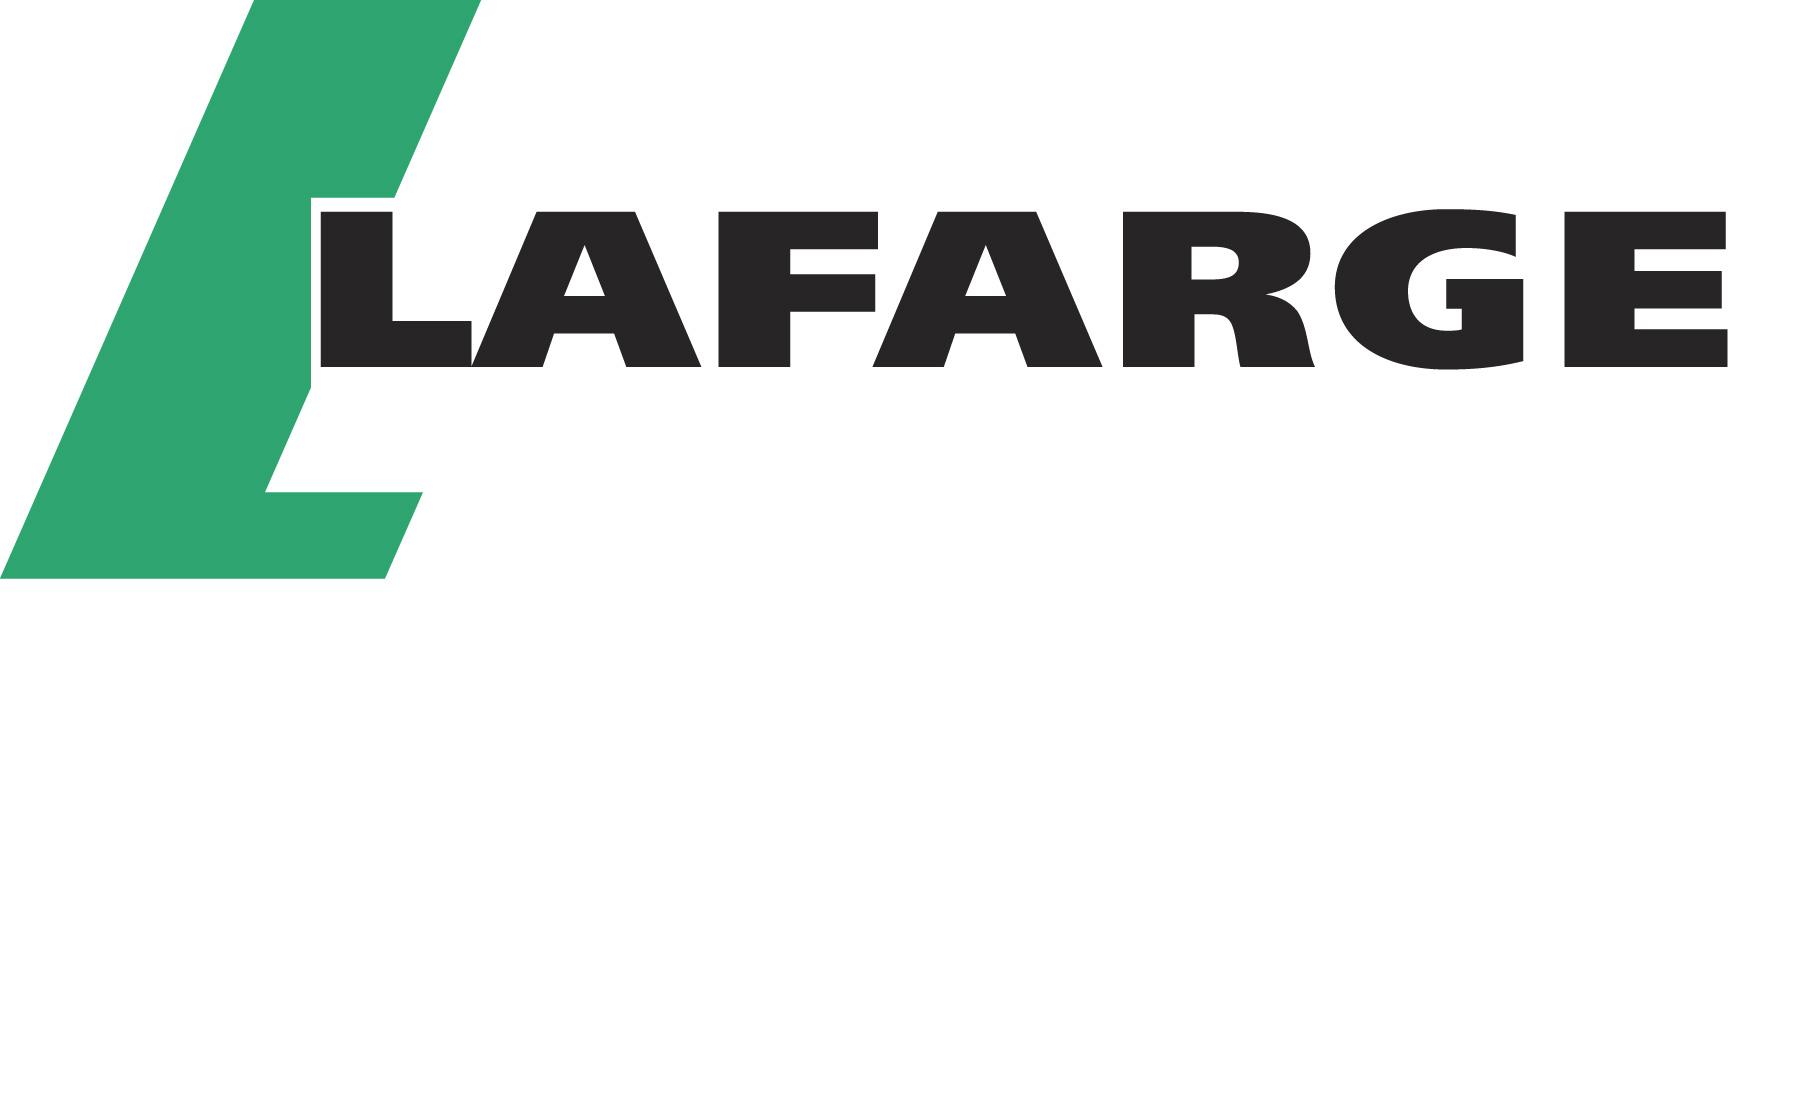 Lafarge logo.JPG (1)